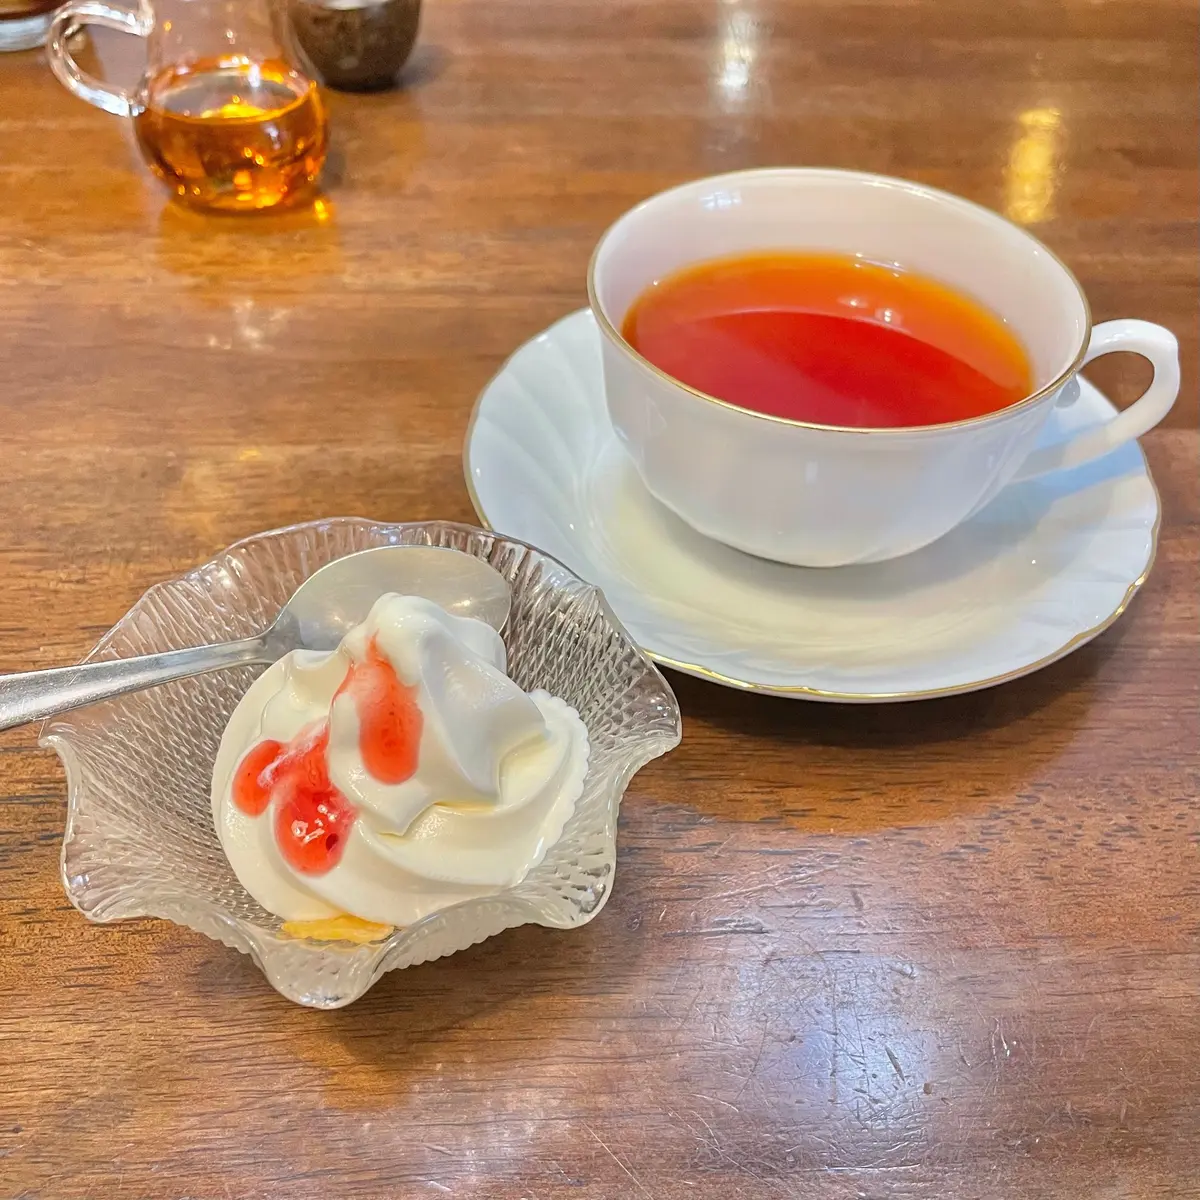 岐阜 飛騨にある可愛らしい外観とアットホームな店内が魅力な喫茶店「アメリカンベーカリー」で楽しむ「オムライス」と「ソフトクリーム」